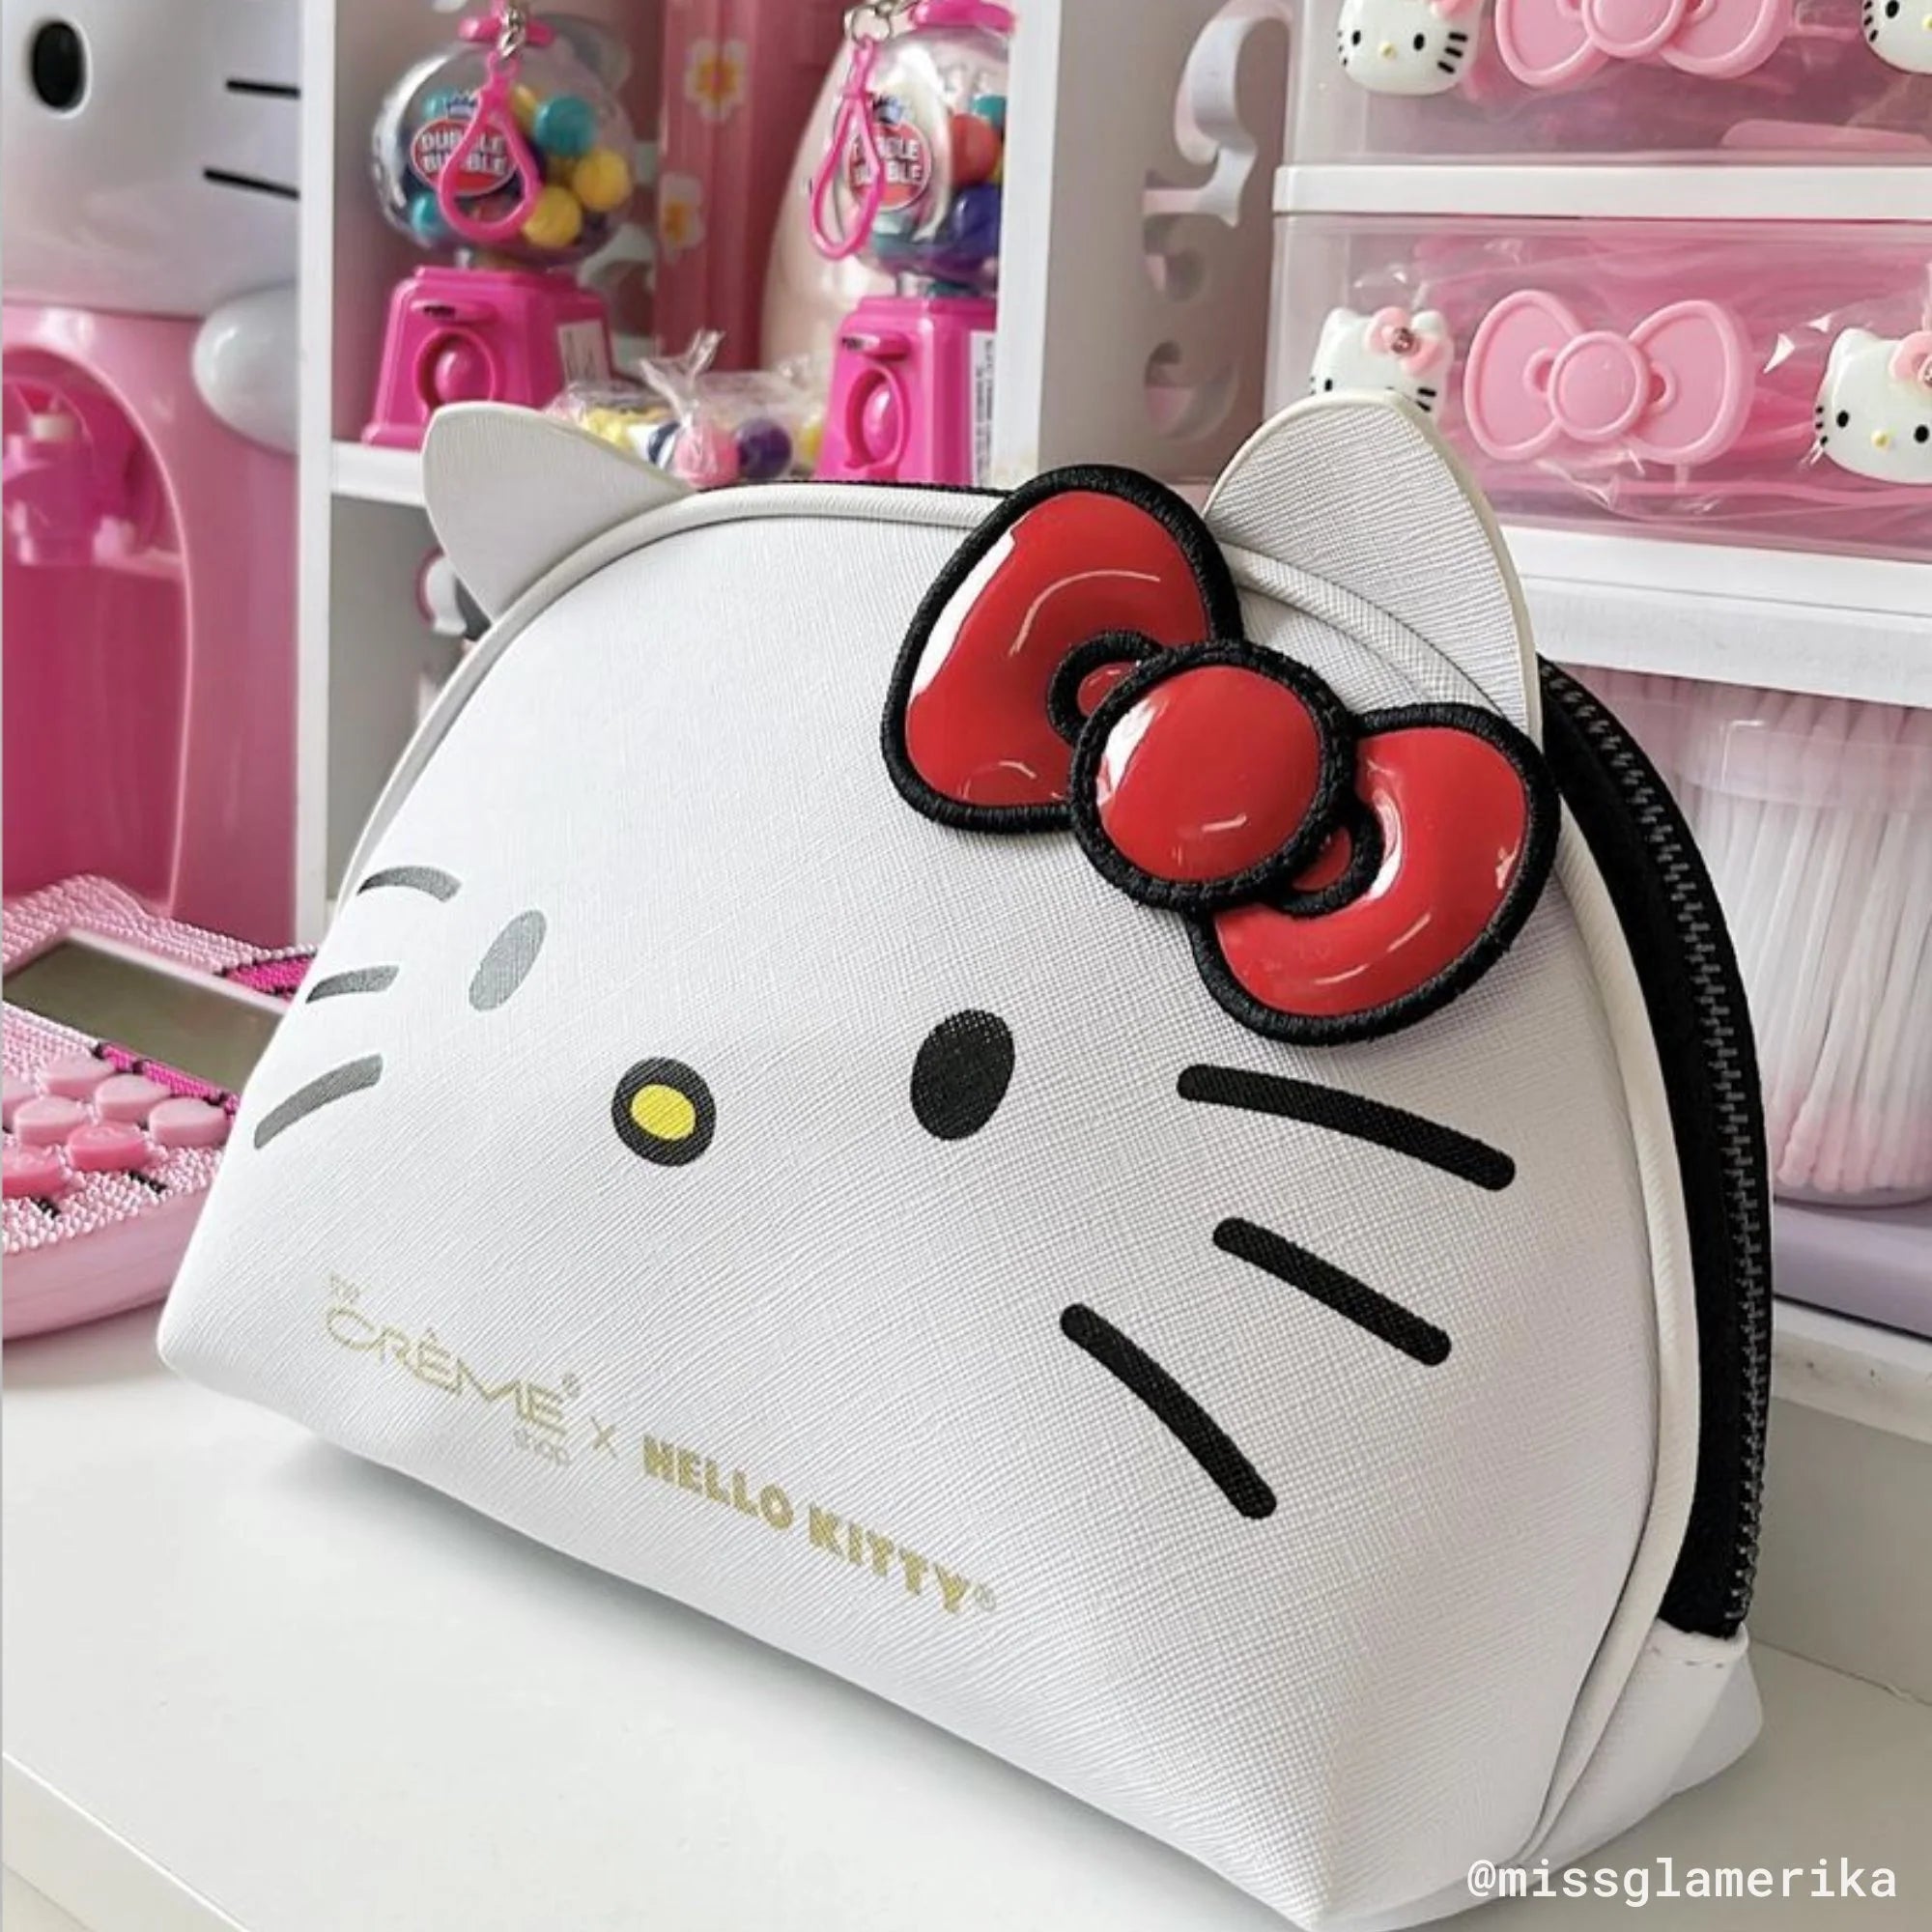 The Creme Shop x Hello Kitty Makeup Bag